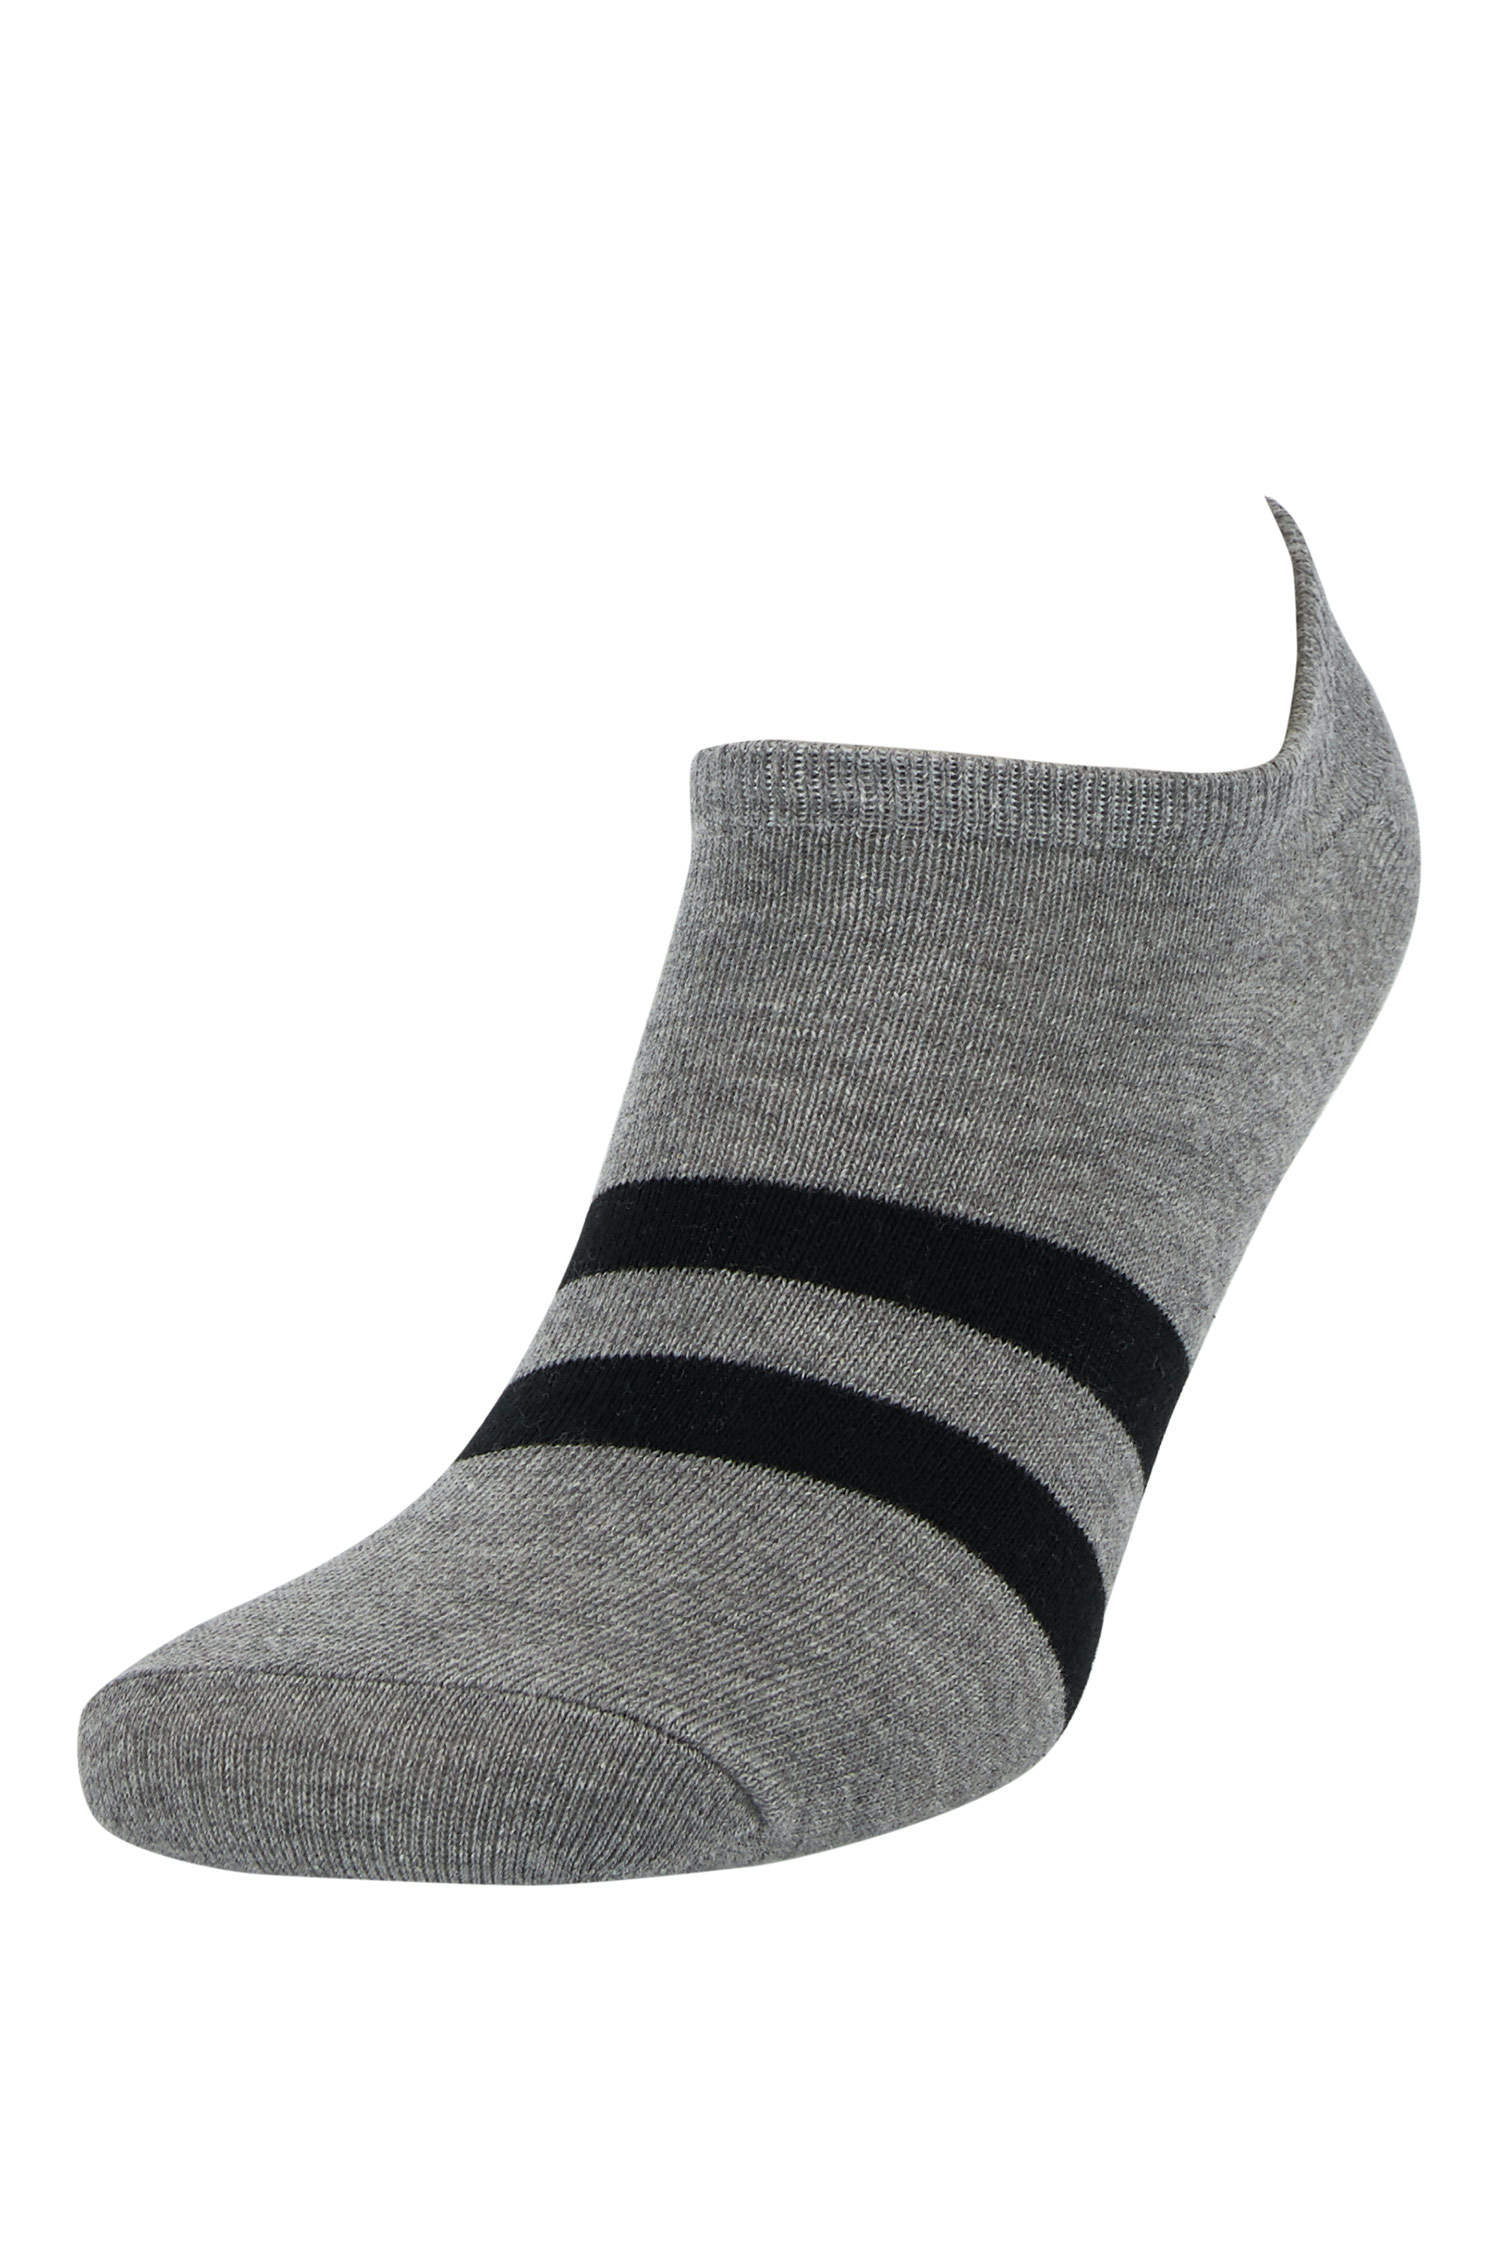 Defacto Renk Bloklu 5'li Patik Çorap. 4